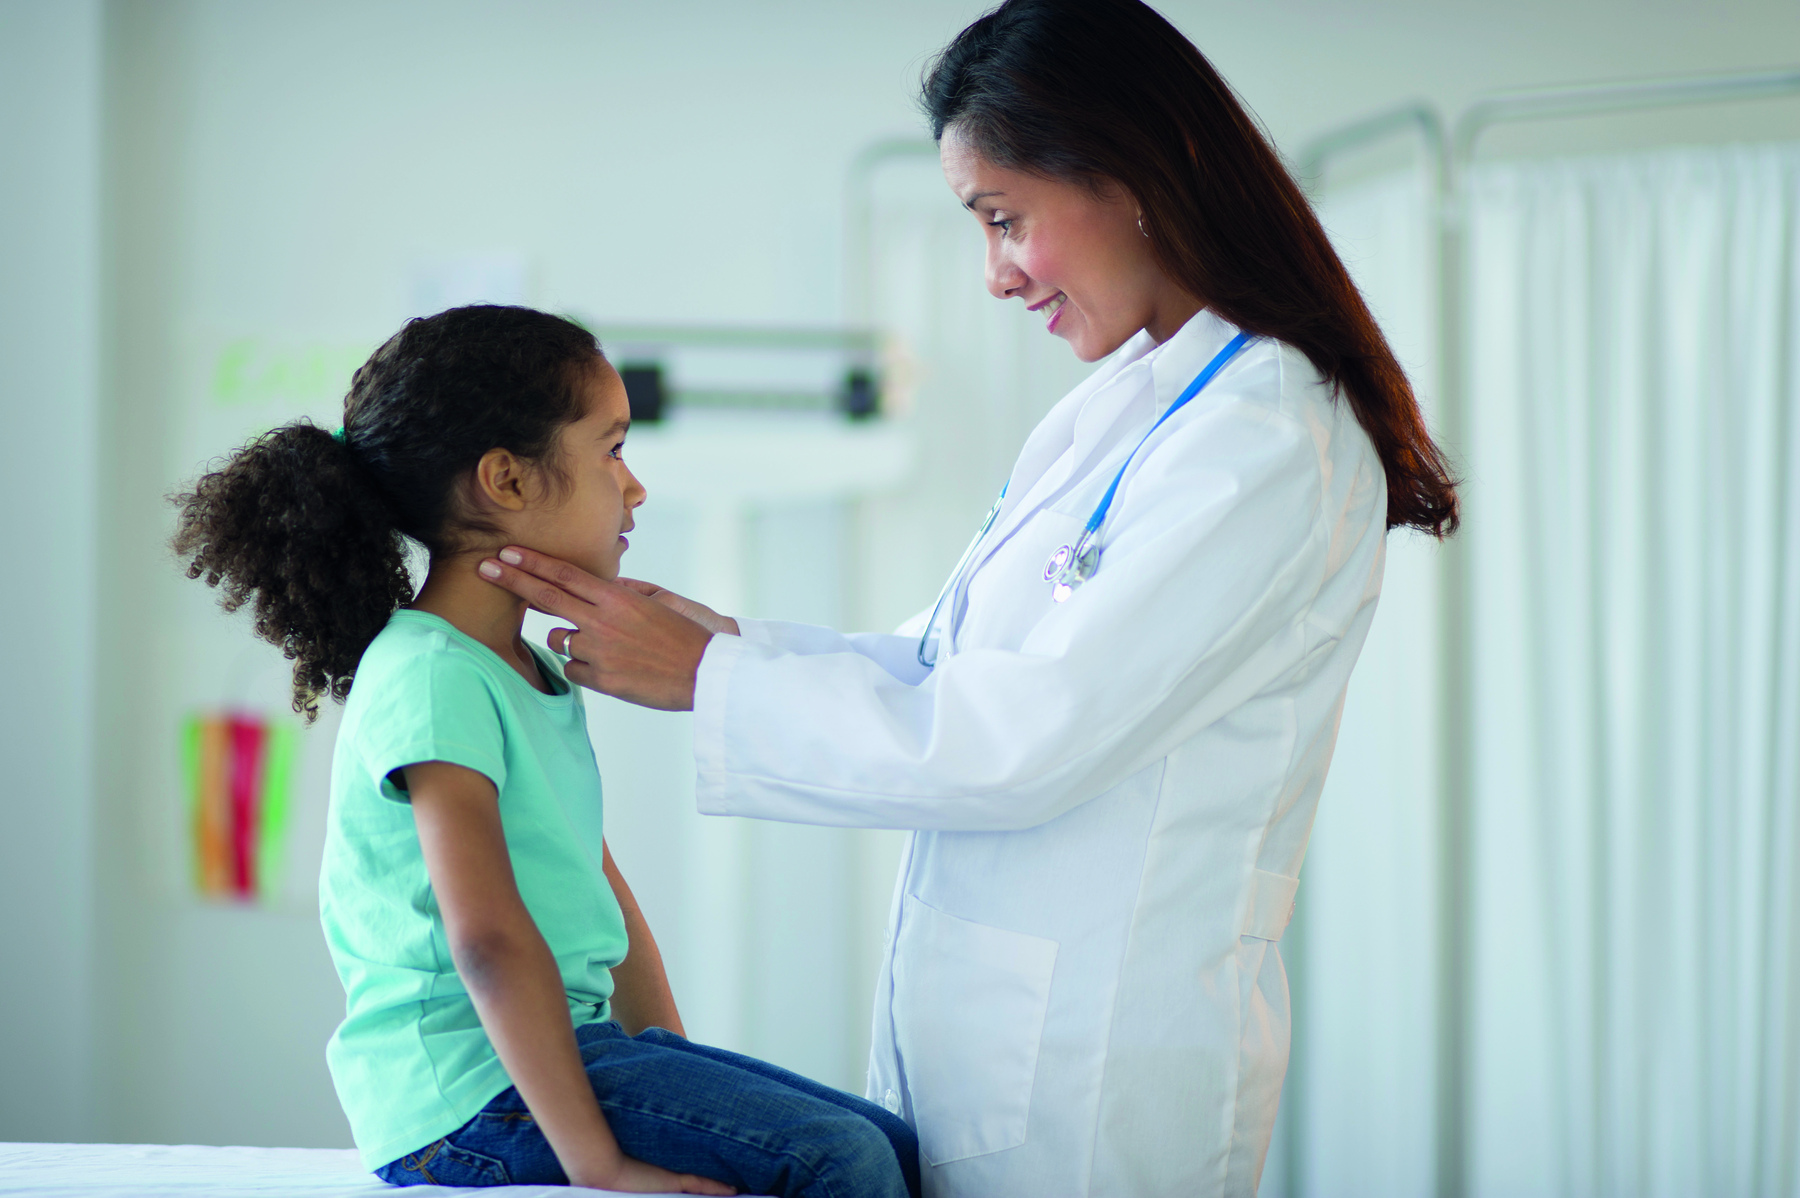 Fotografia. Médica pediatra de cabelo preto, jaleco branco e estetoscópio no pescoço está com as mãos no pescoço de uma menina de cabelo preto e camiseta azul sentada em uma maca.